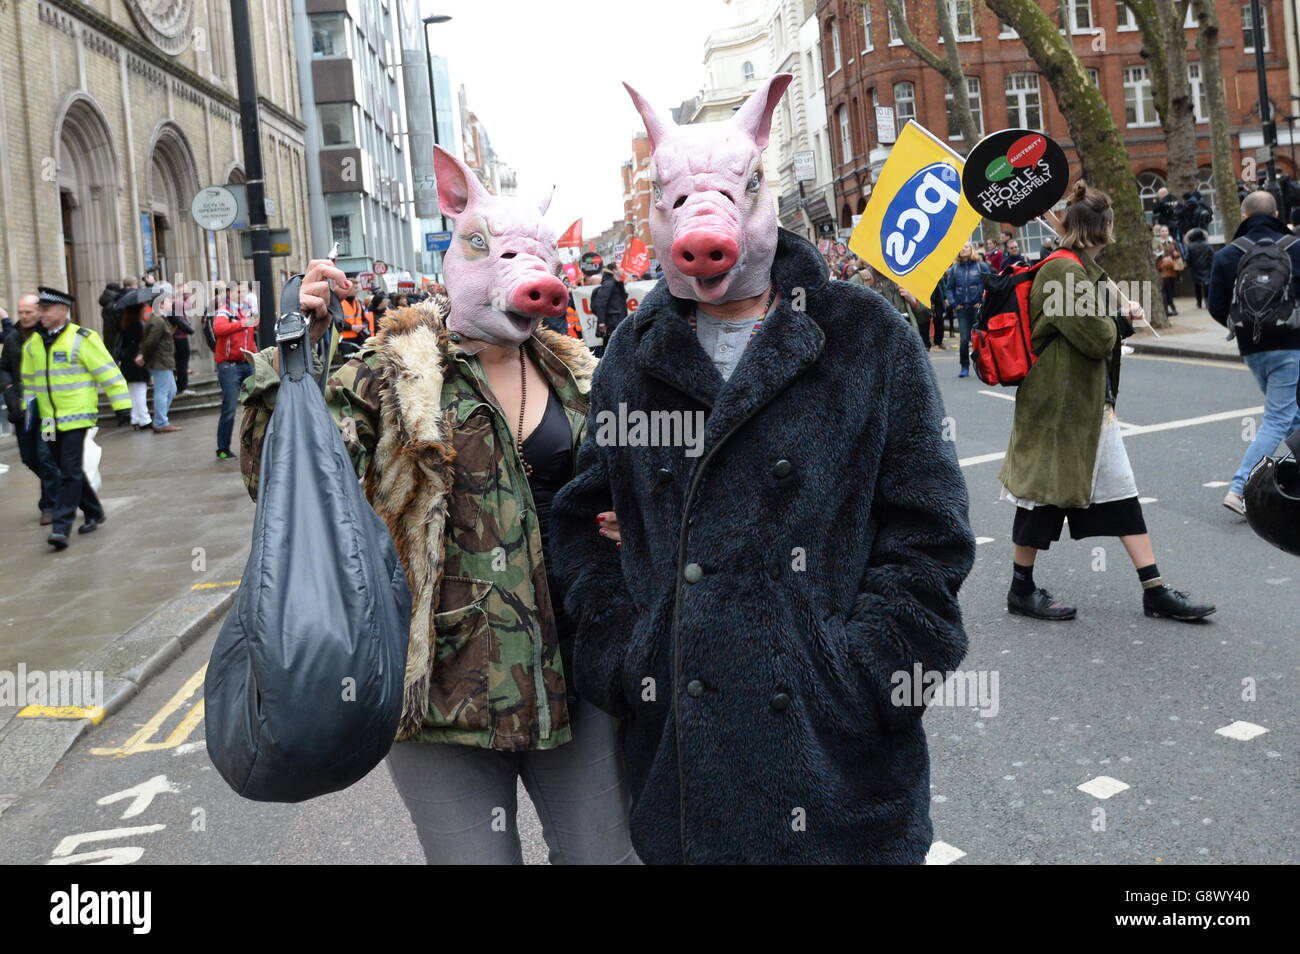 Aktivisten marschieren in einer Anti-Austeritäts-Demonstration im Zentrum von London ein. Stockfoto